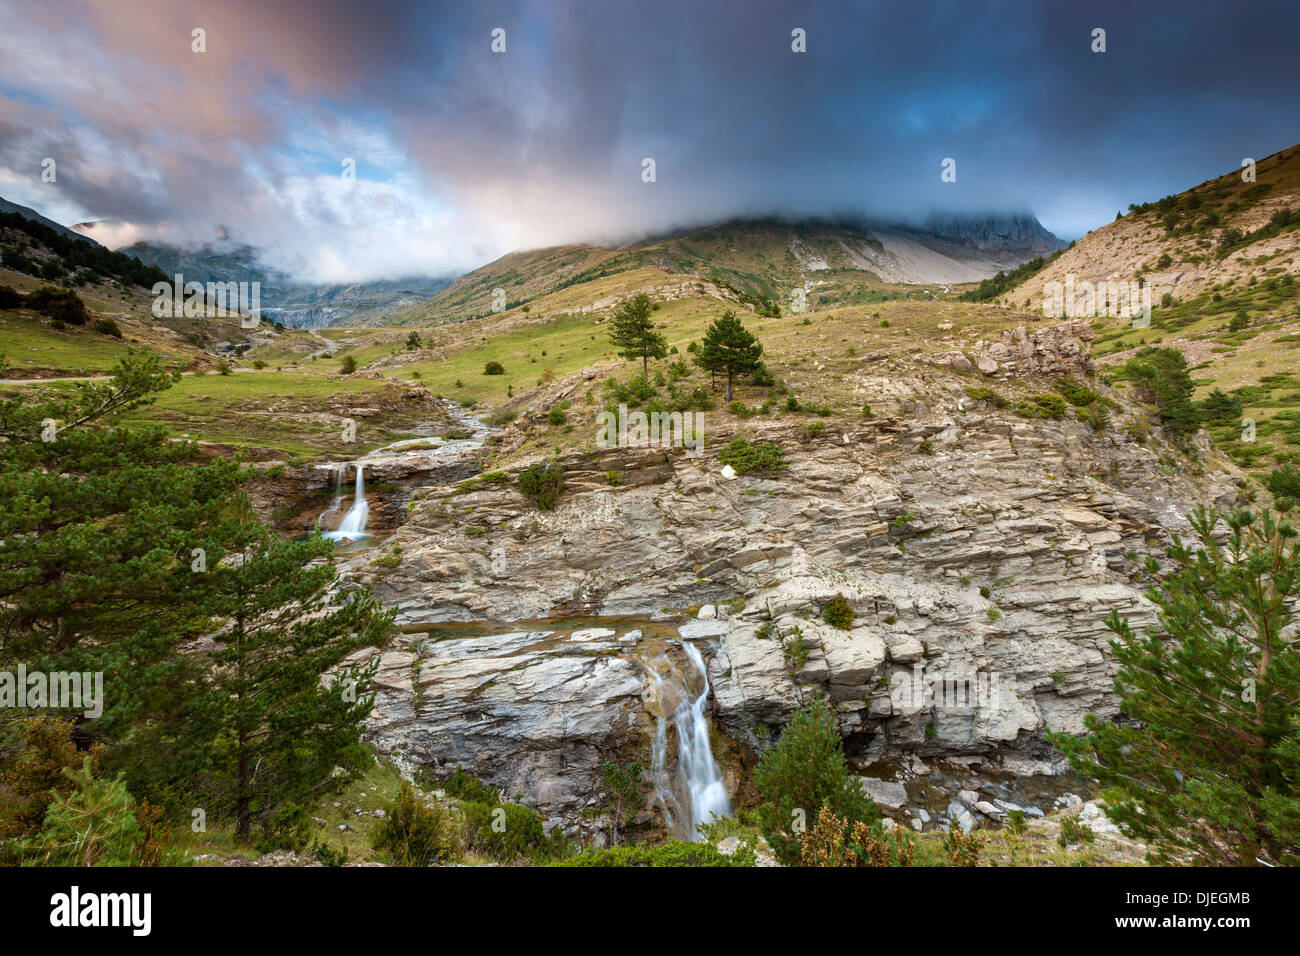 Aisa valle, Parque Natural de los Valles Occidentales de la Jacetania, Pirineo, provincia de Huesca, Aragón, España, Europa. Foto de stock